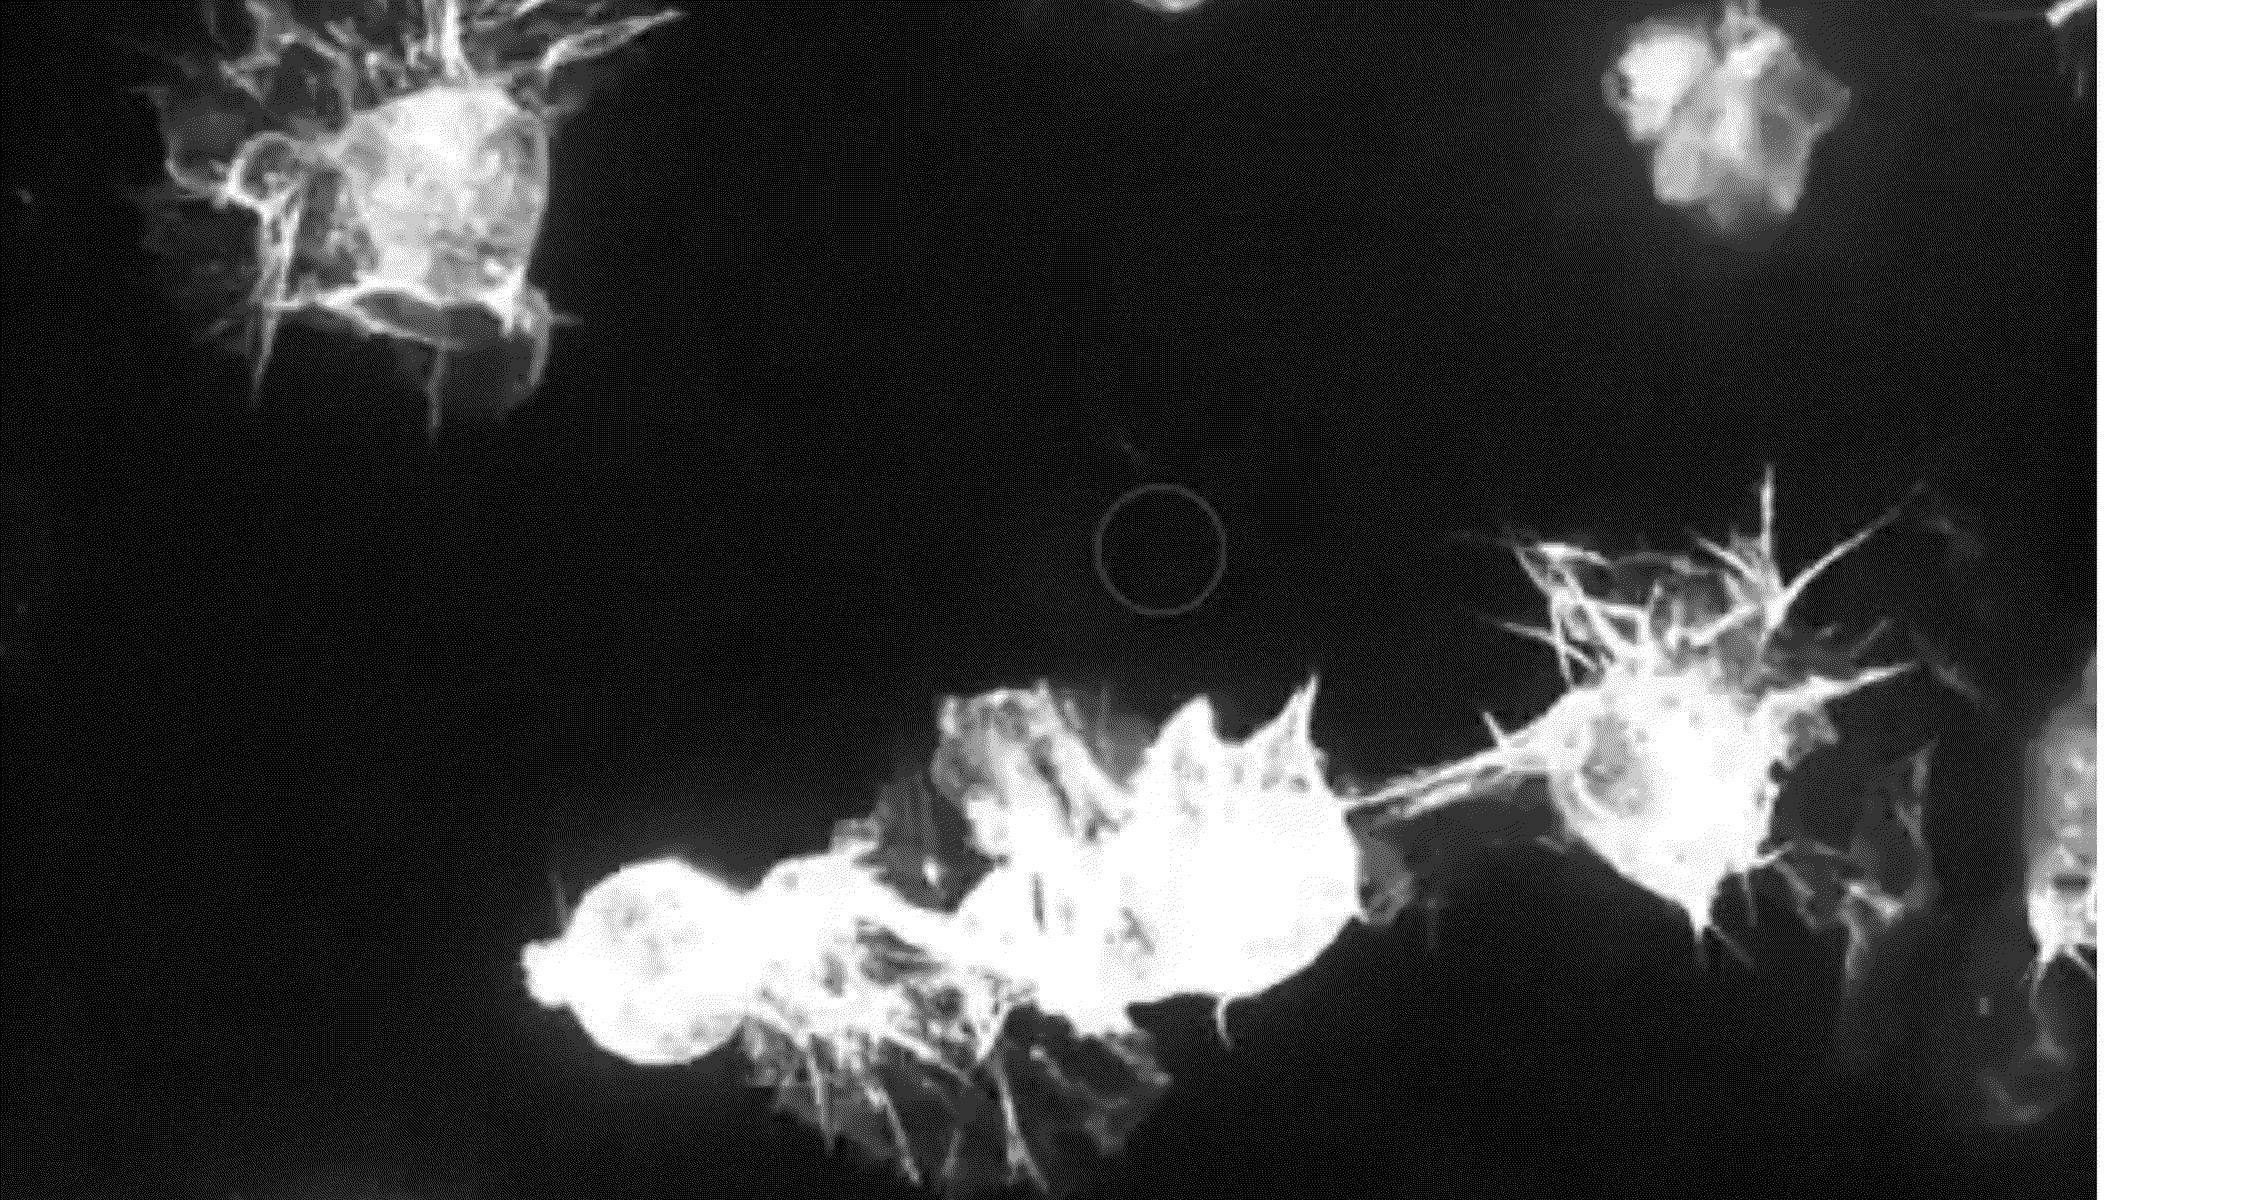 Macrophage migration:

Lebendzellaufnahme migrierender Makrophagen nach Laser-induzierter Einzelzellablation (Kreis) im lebenden Organismus